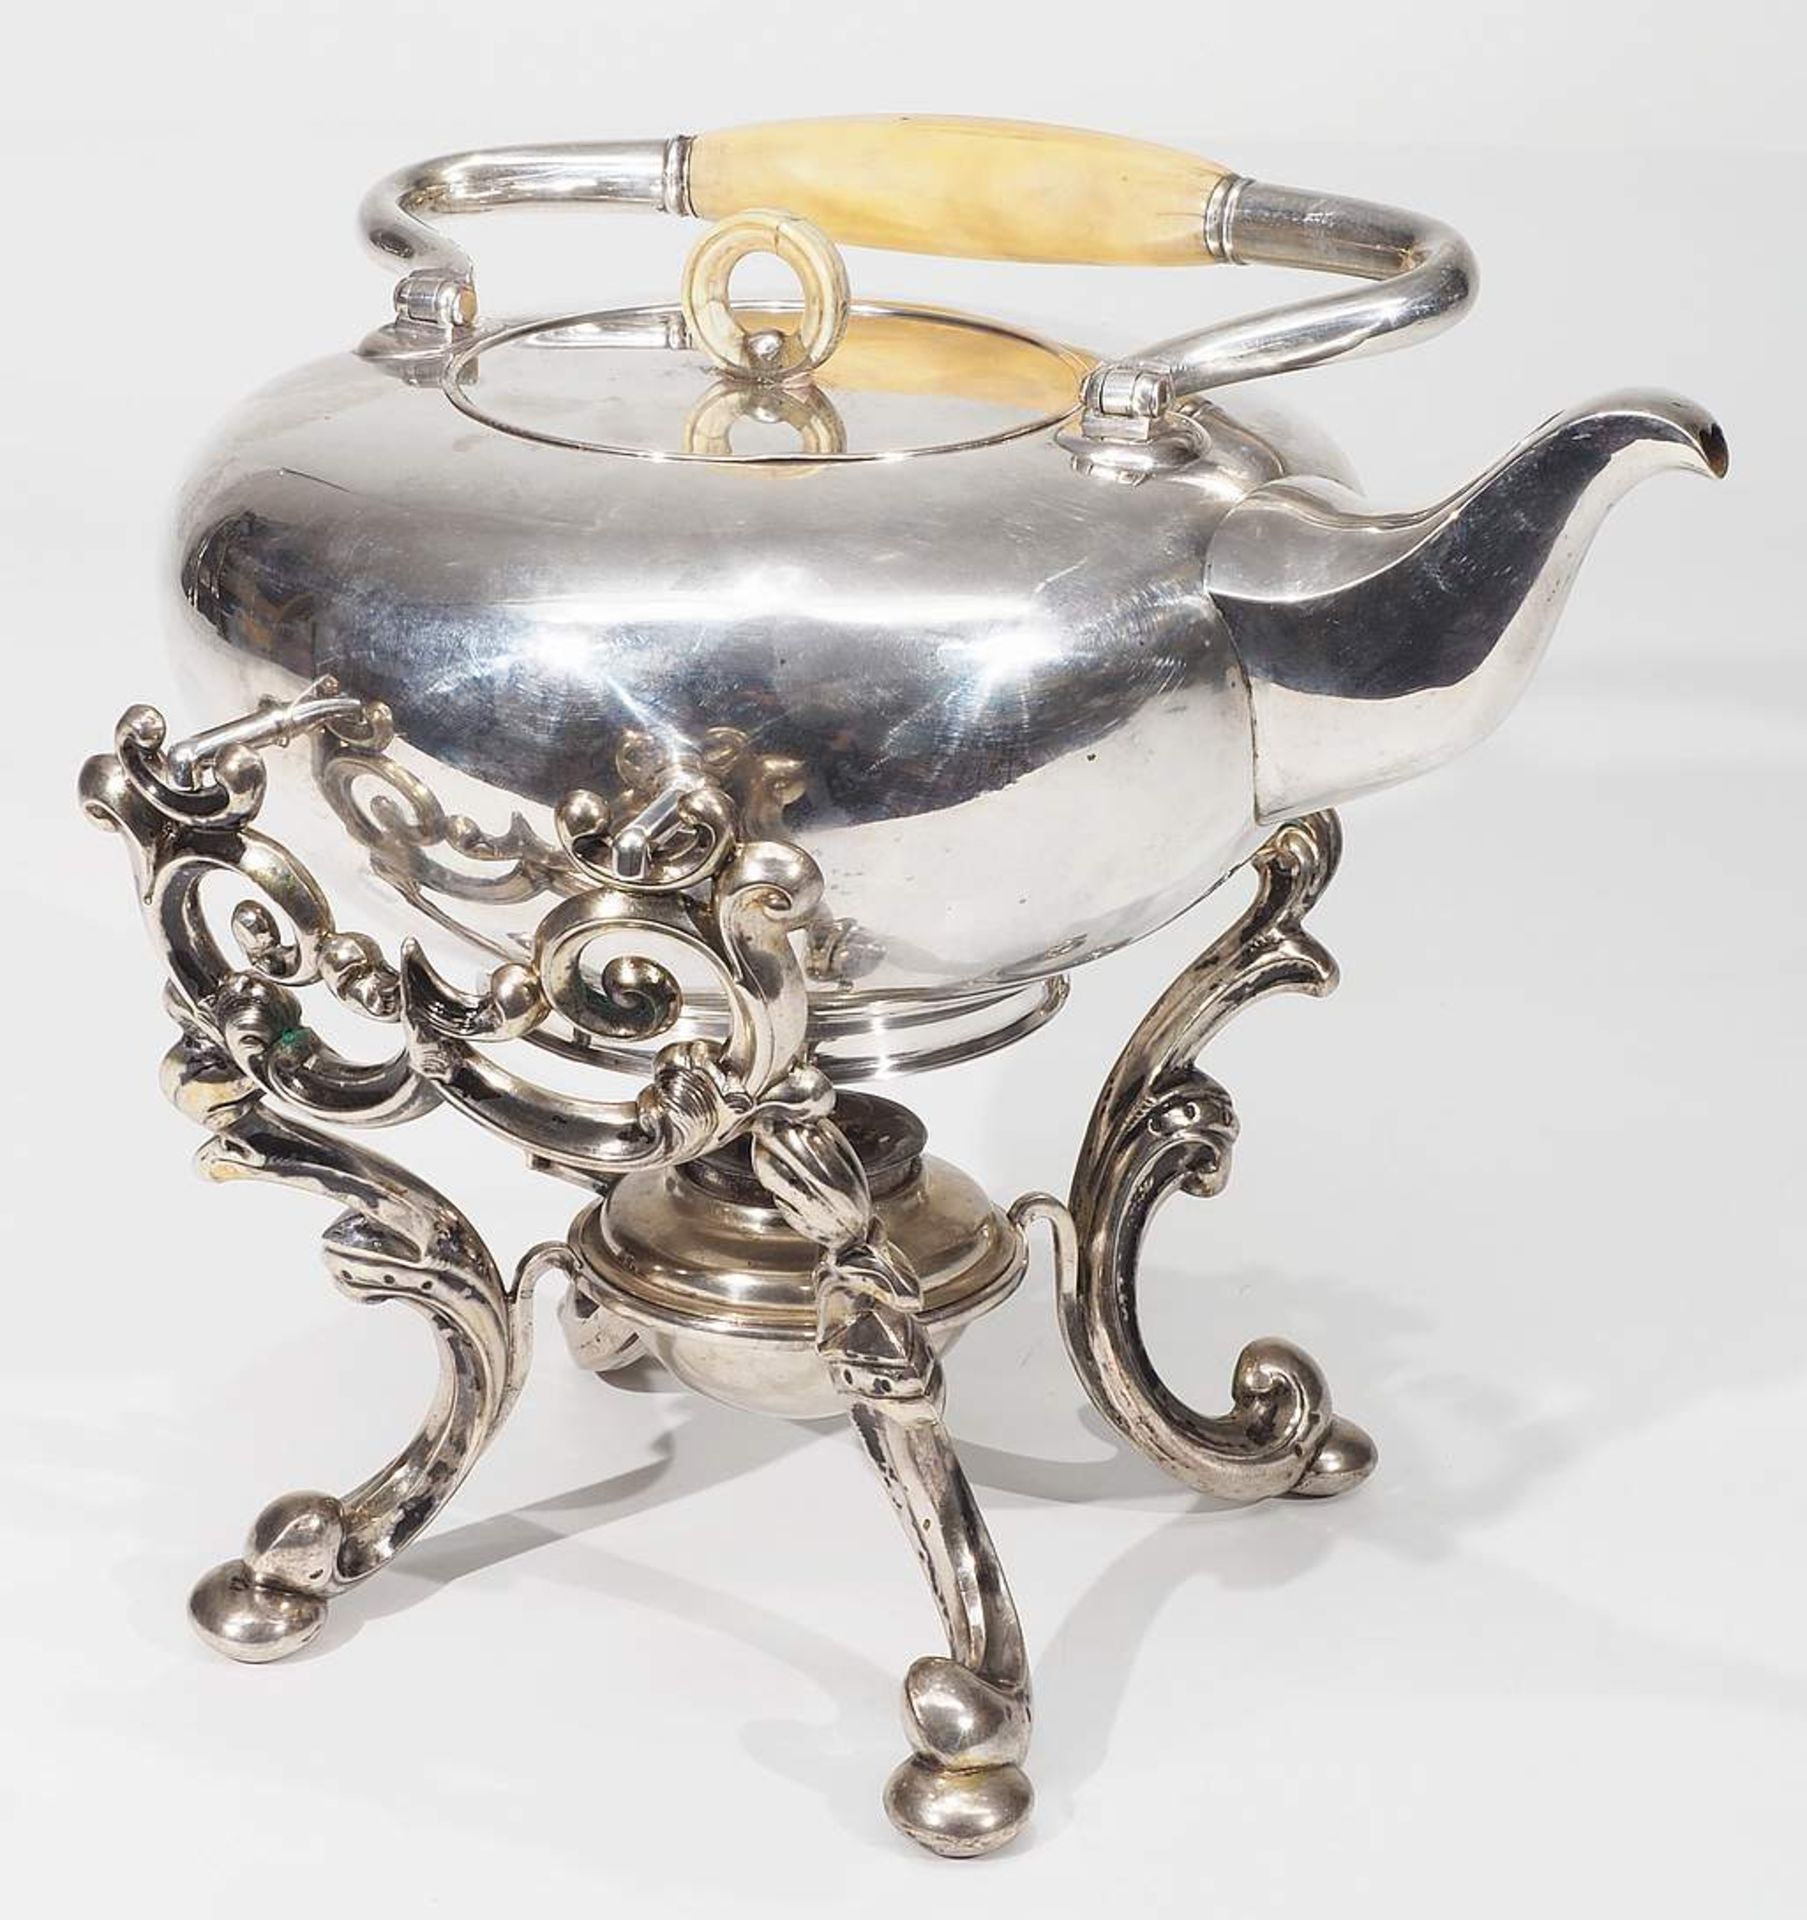 Teekessel auf Rechaud, 12 Lot Silber, um 1800 - etwa 1857, ( = 750er Silber ). Hofjuwelier Haller & - Bild 4 aus 7